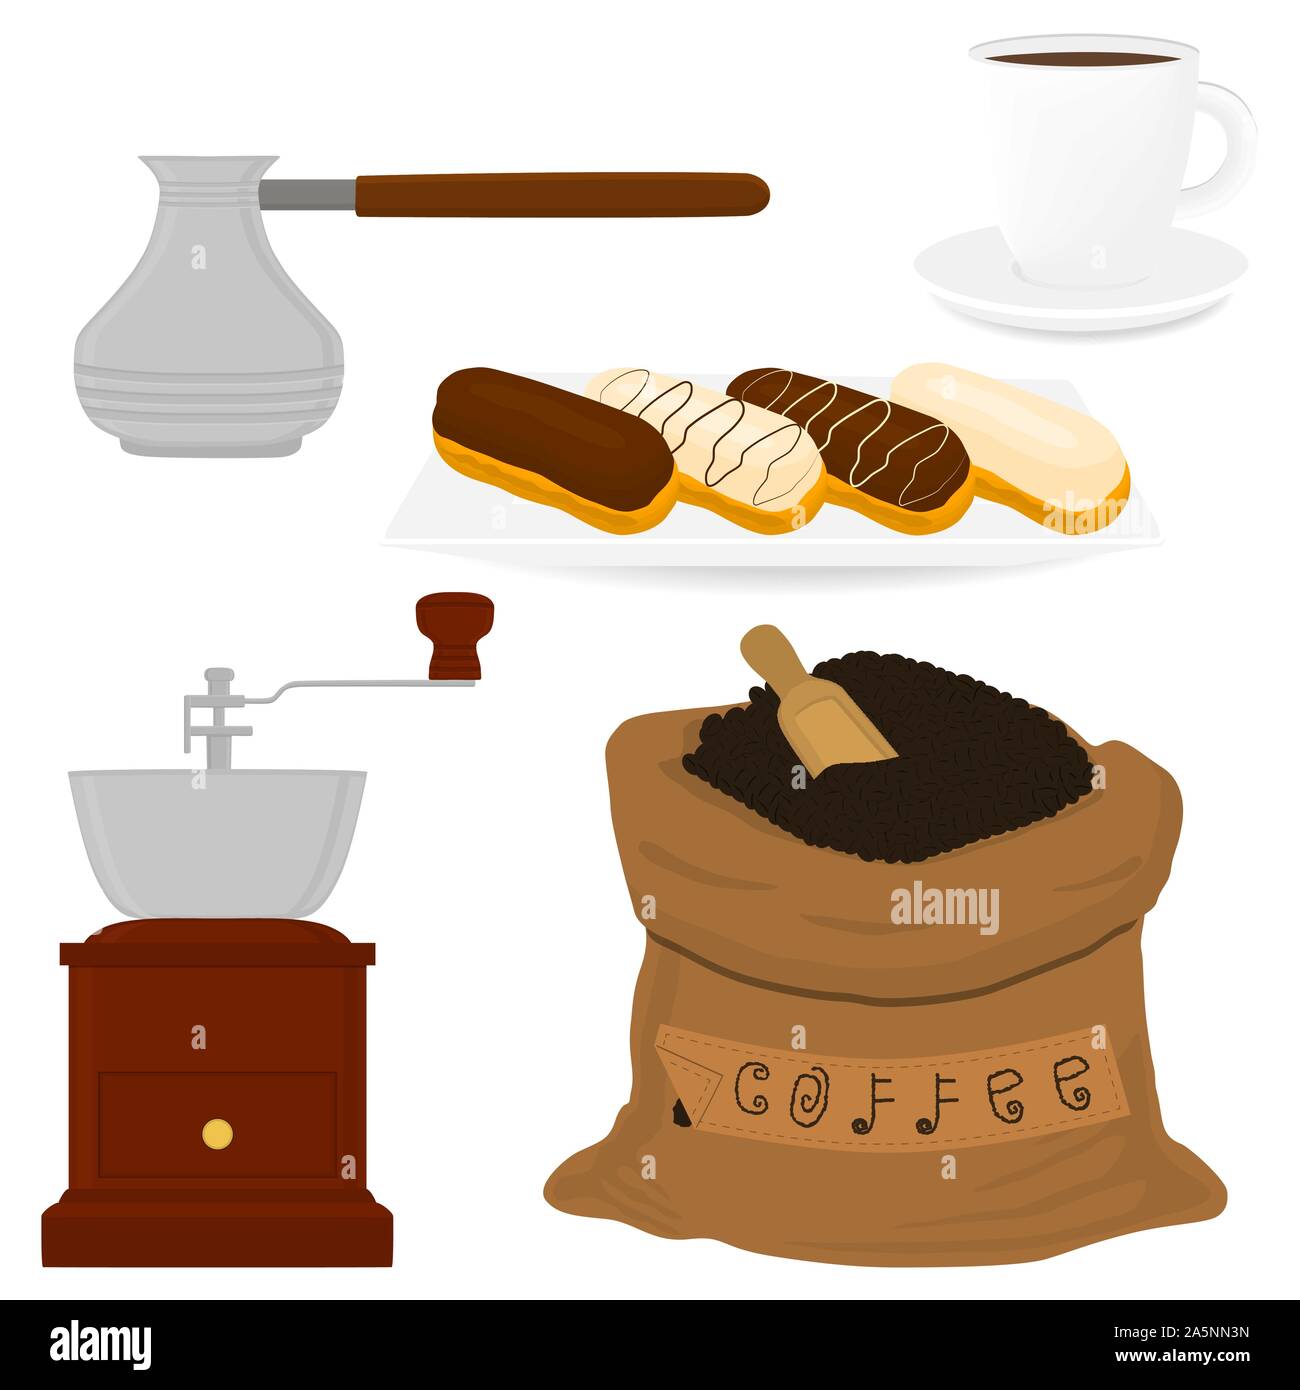 Abbildung: Symbol auf Thema große farbige verschiedene Arten Teekocher Sack, neue Größe logo Mühlen eingestellt. Mühle Muster bestehend aus Sammlung Zubehör zu Teekocher s Stock Vektor